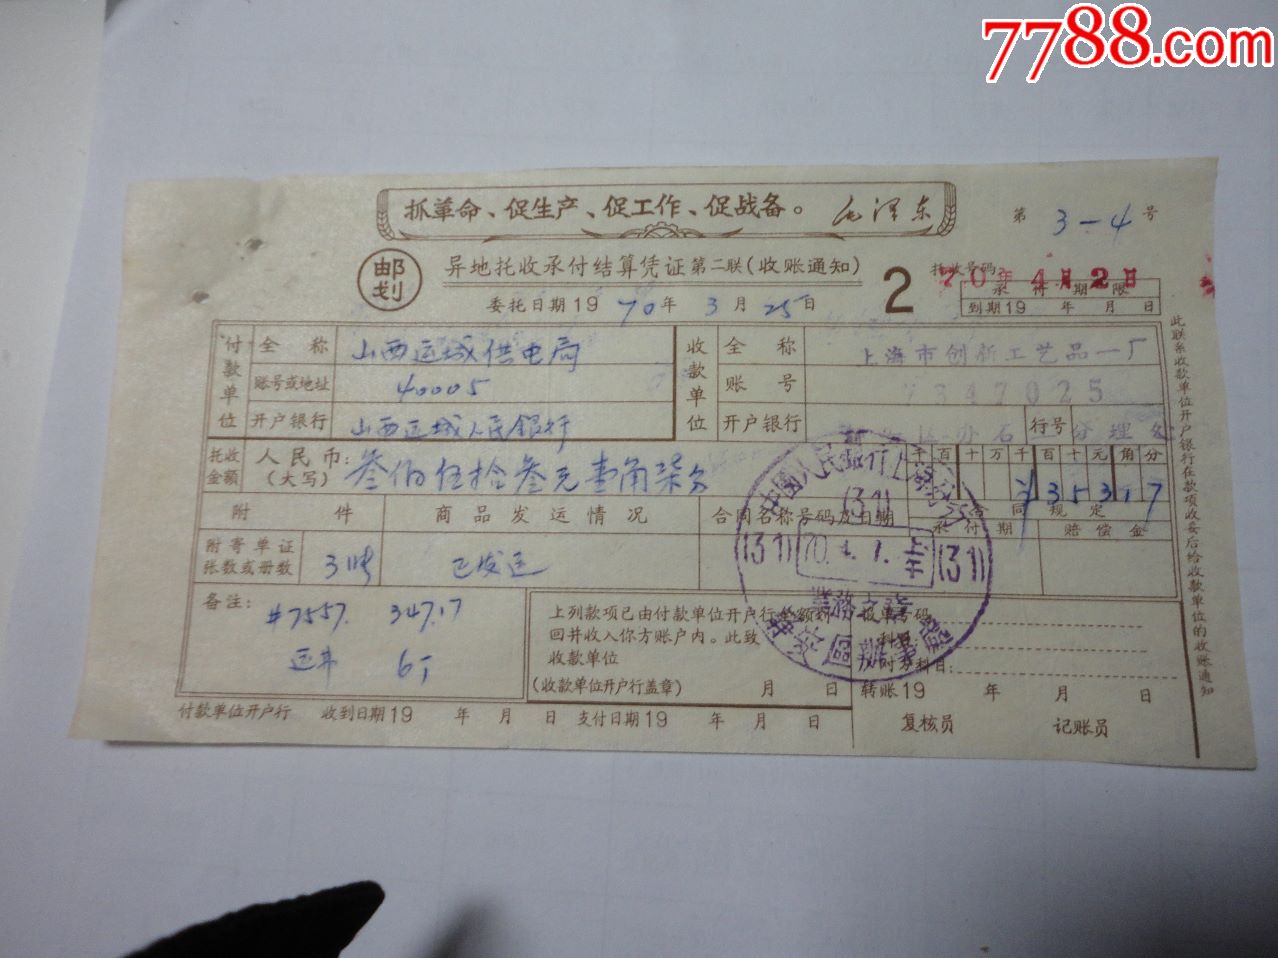 1970年毛语录异地托收承付结算凭证(邮划)(收款通知)